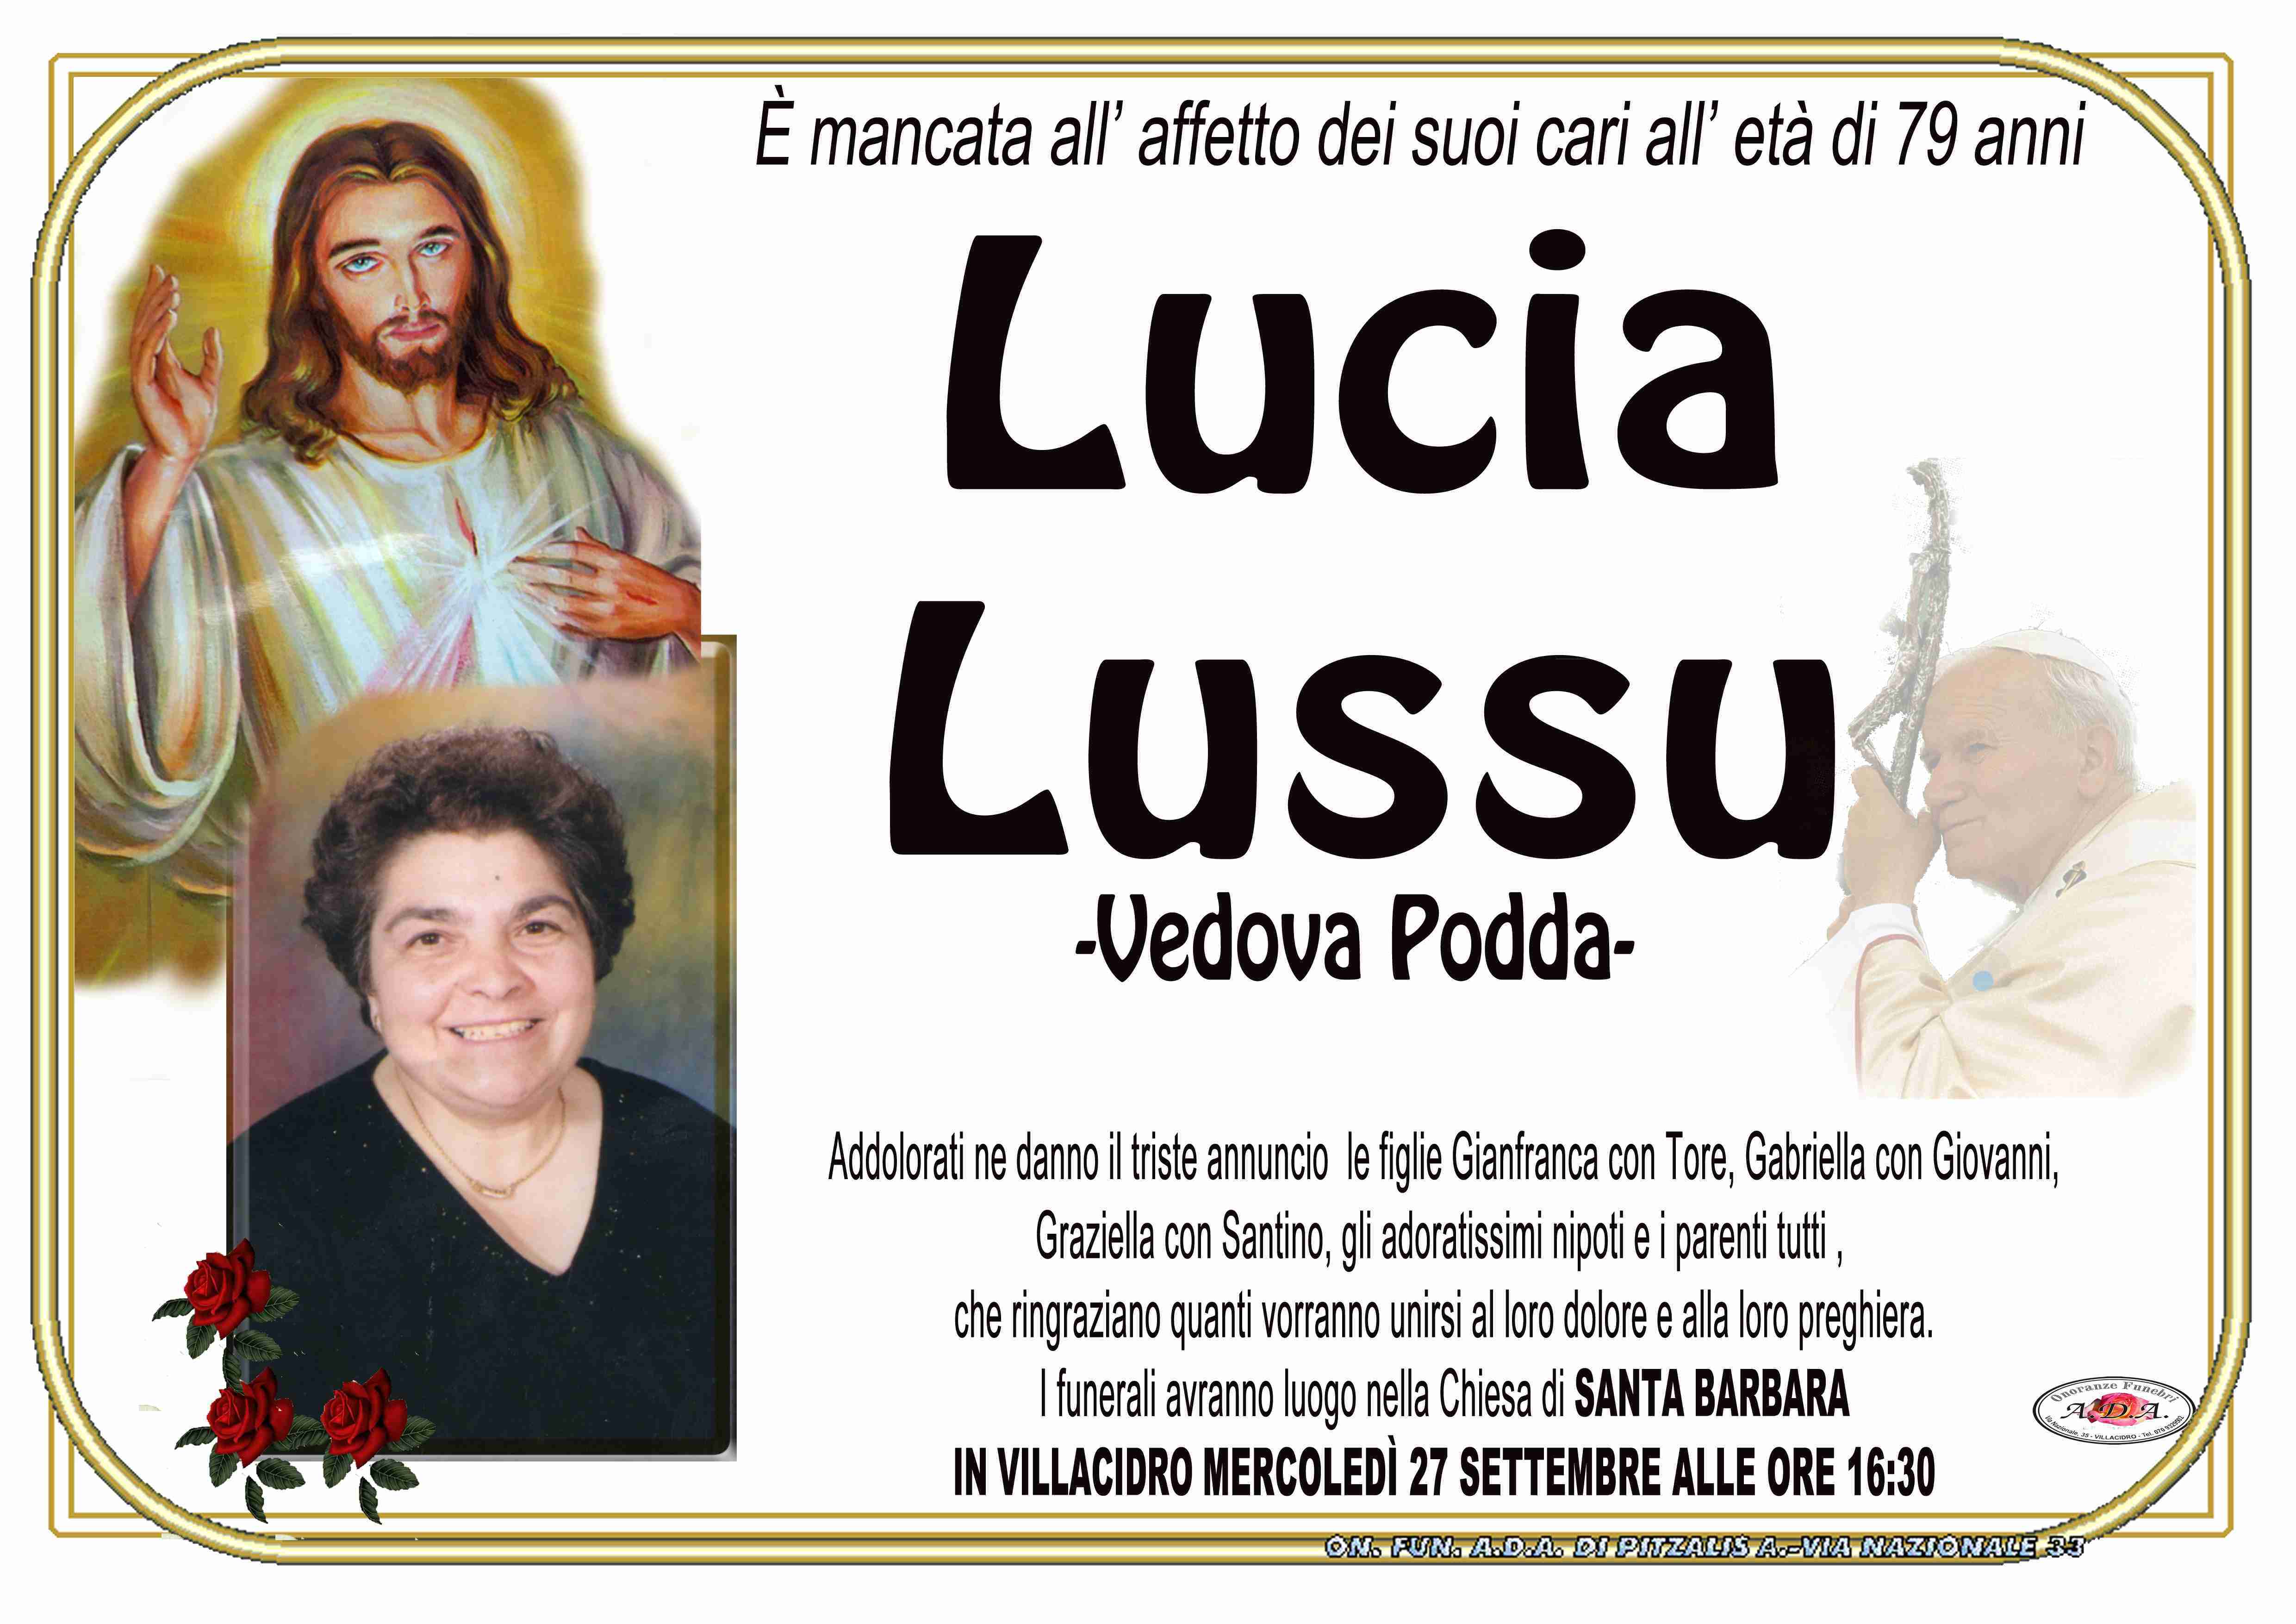 Lucia Lussu